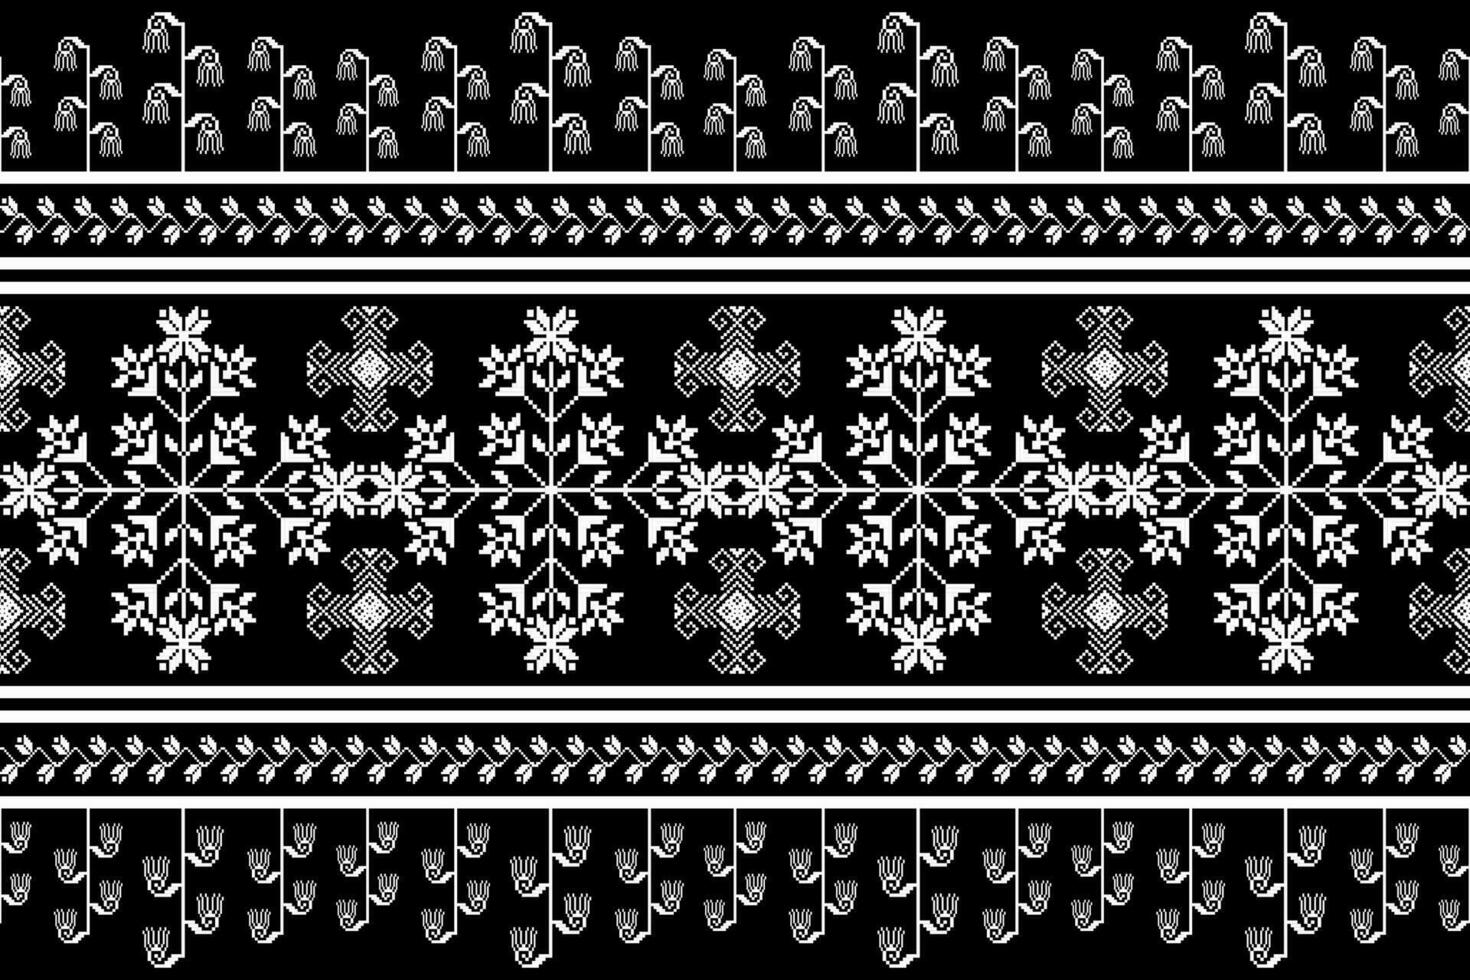 floral cruzar puntada bordado en blanco fondo.geometrico étnico oriental sin costura modelo tradicional.azteca estilo resumen vector ilustración.diseño para textura,tela,ropa,envoltura,pareo.